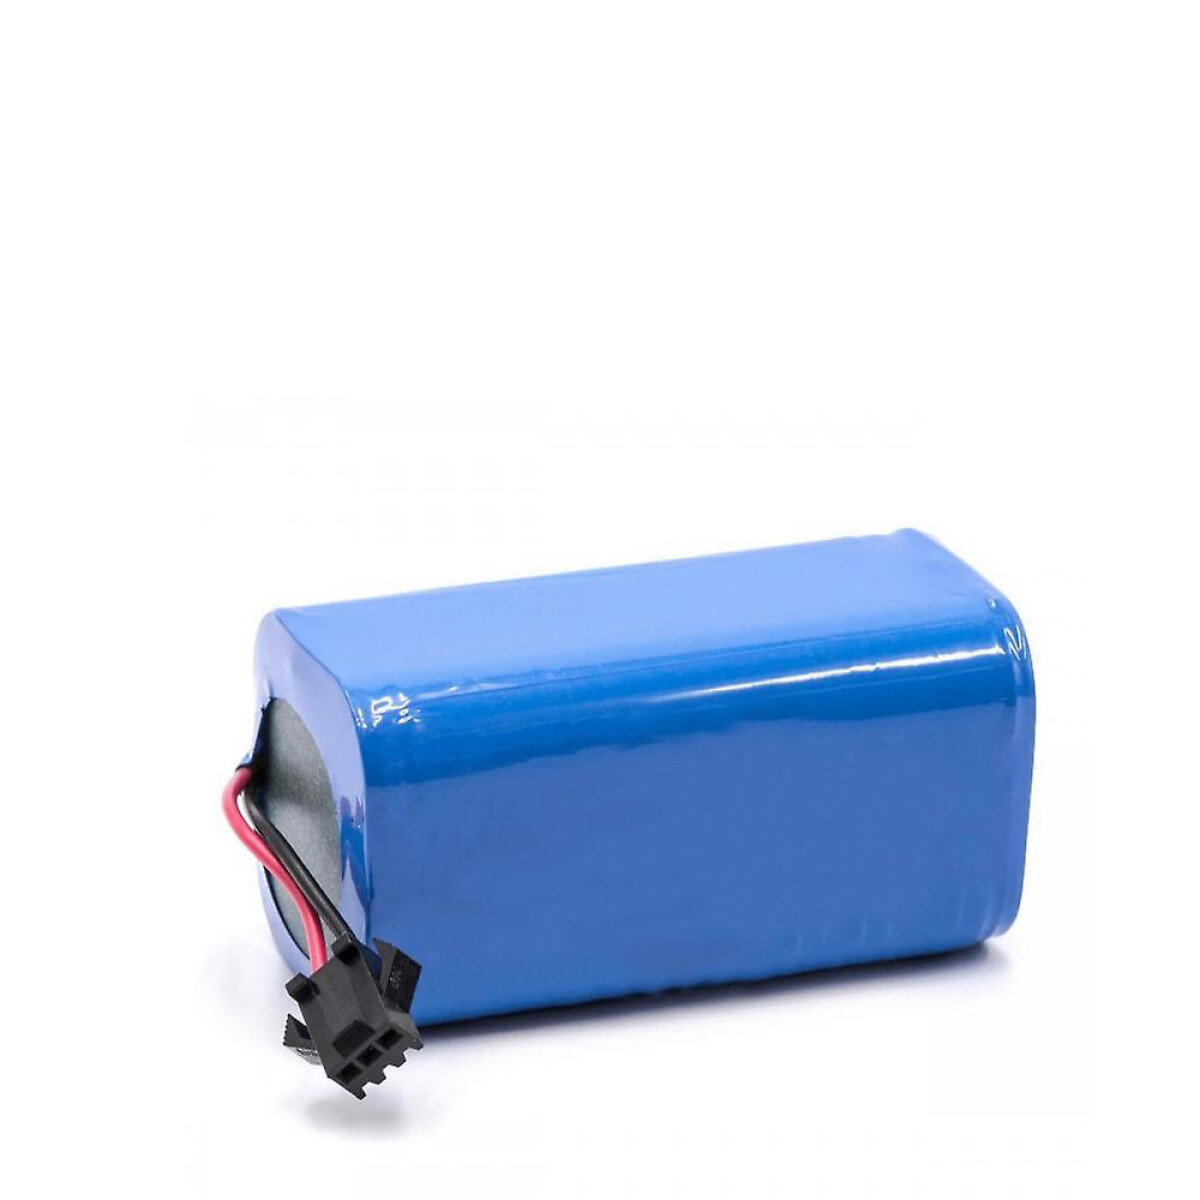 Bateria de reemplazo para aspiradoras Robovac - Eufy 